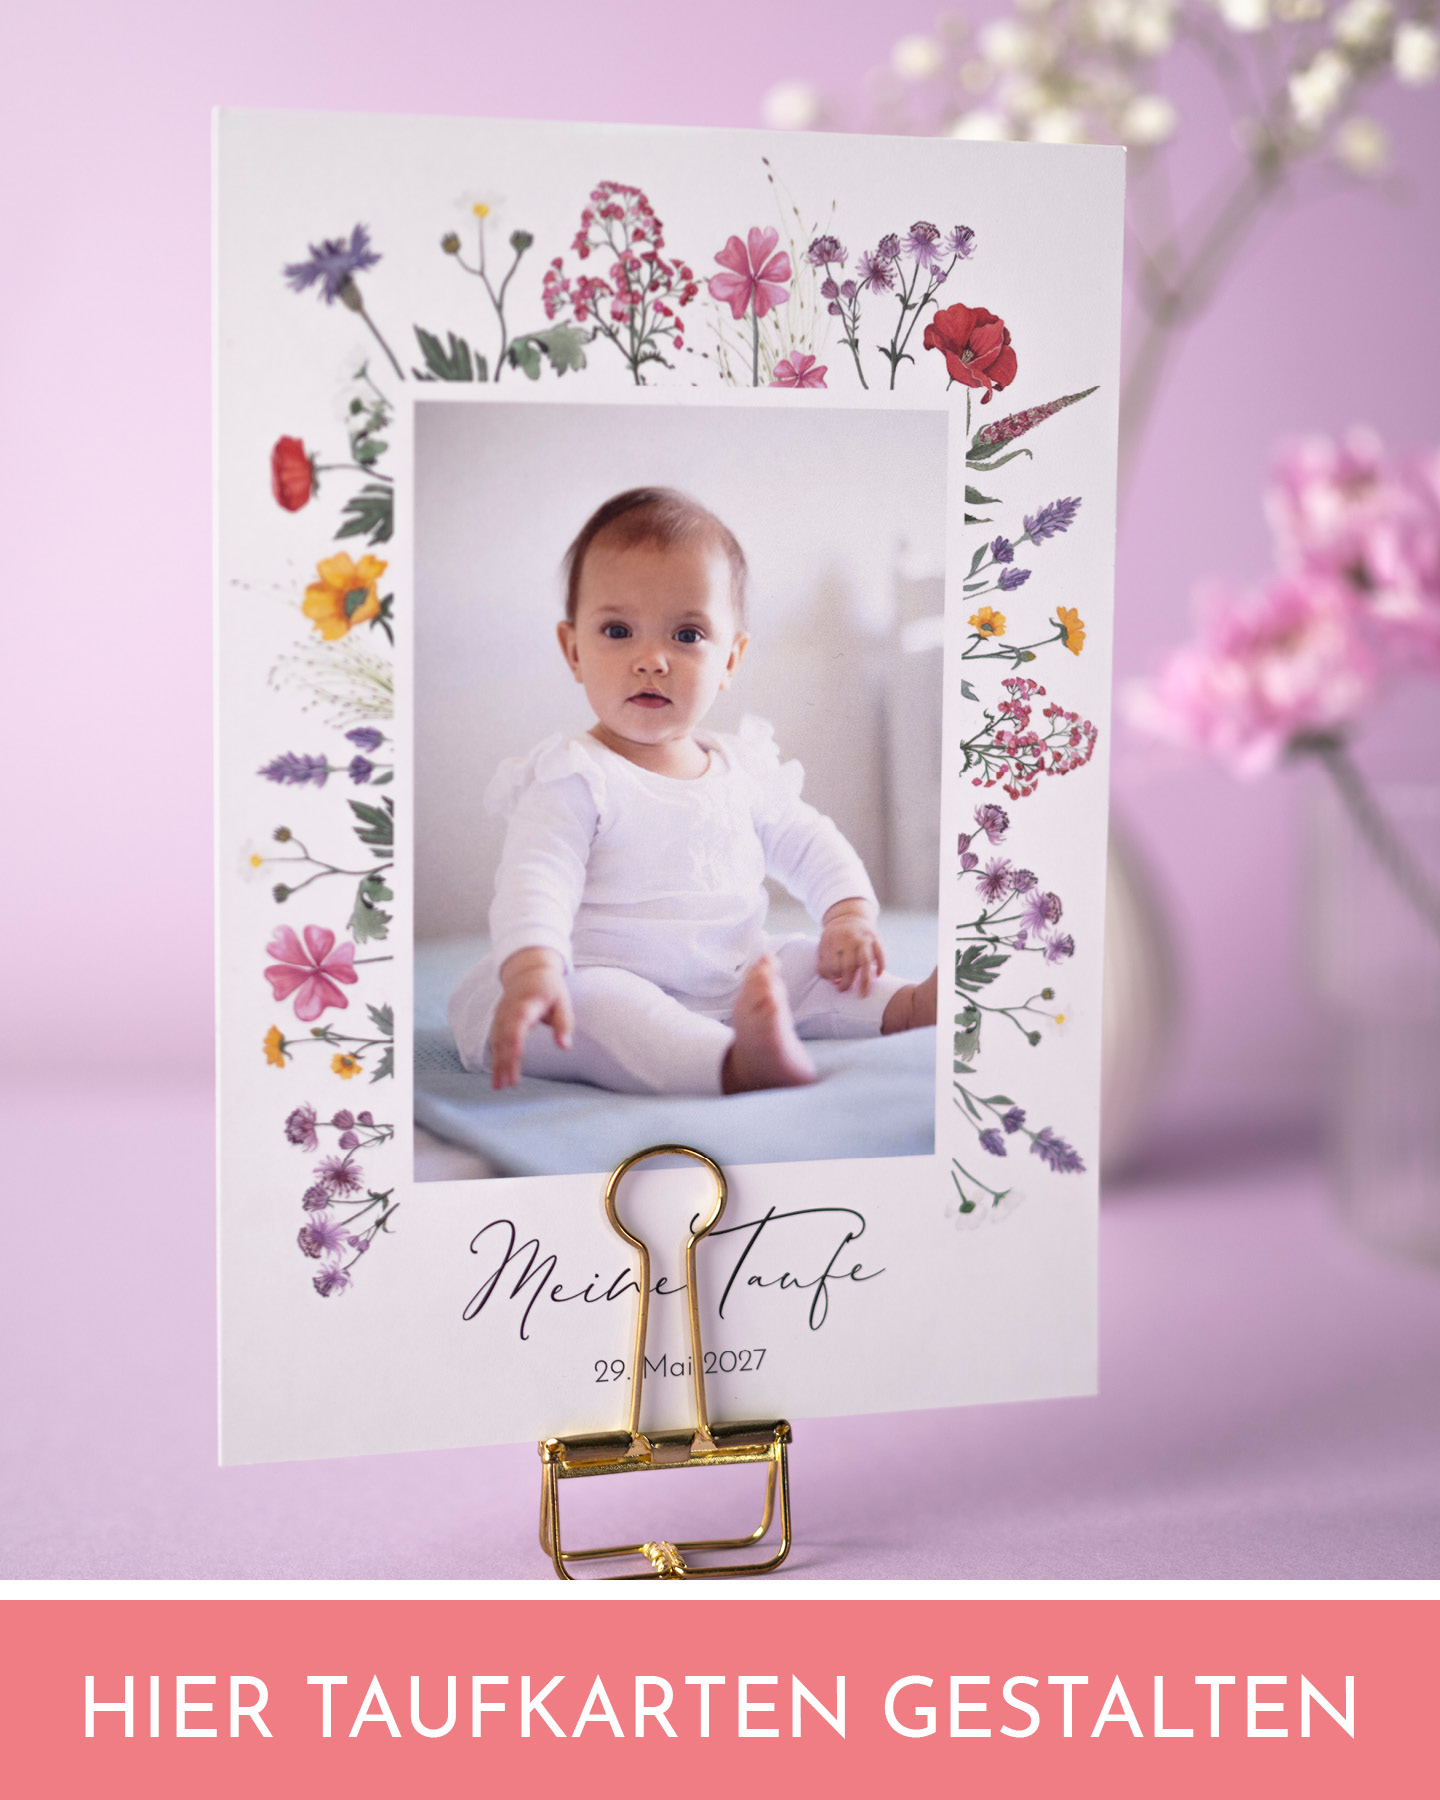 Schöne Einladungskarte für Frühlingstaufe mit Babyfoto